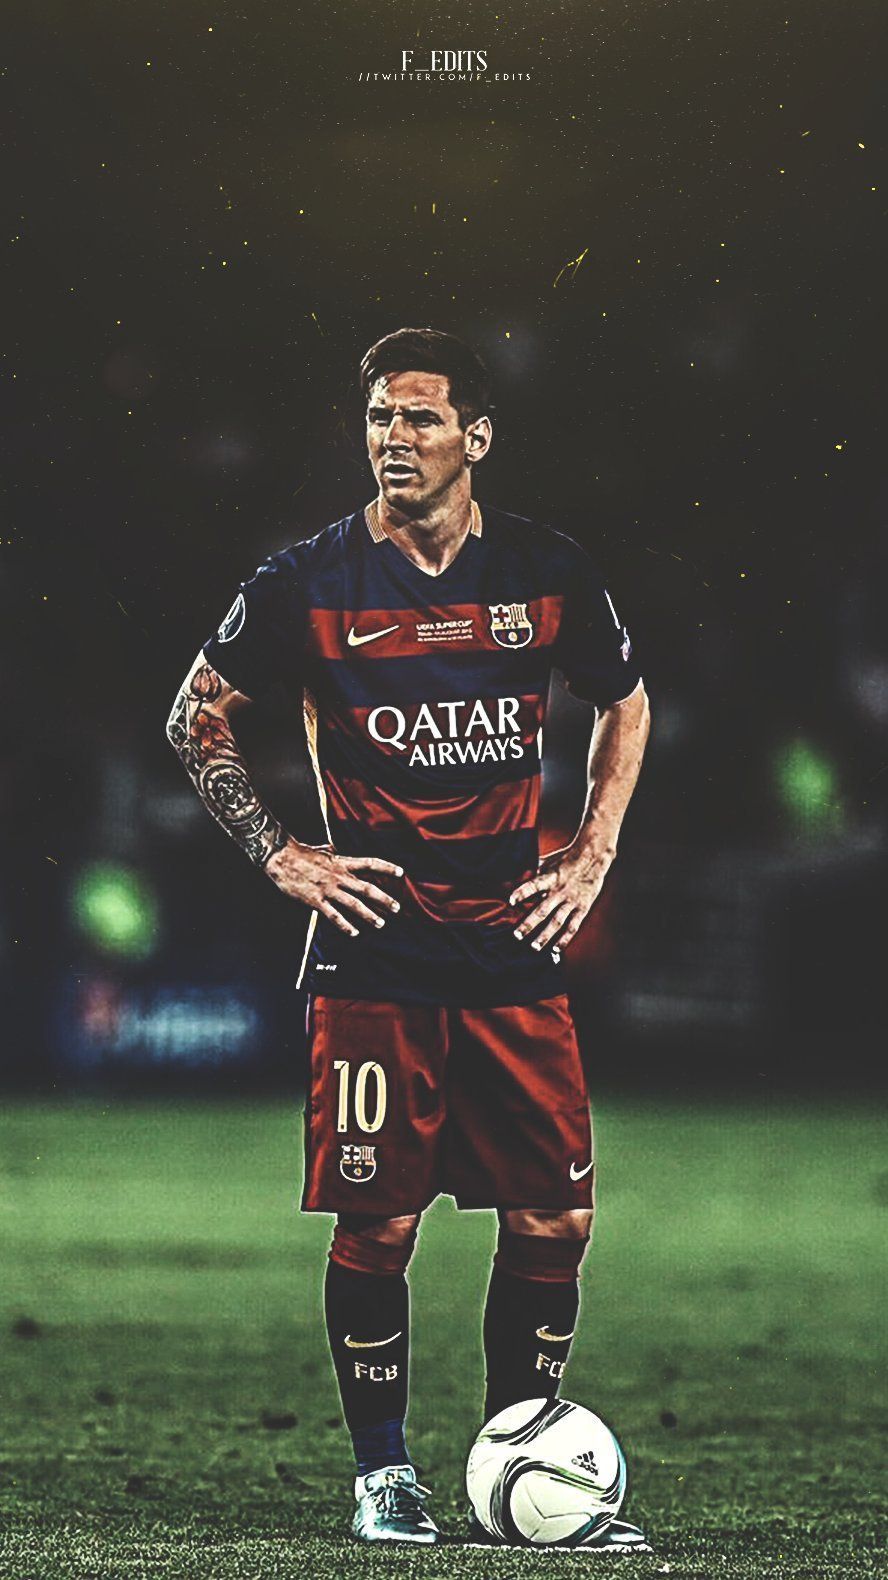 Lionel Messi: Lionel Messi, một trong những cầu thủ xuất sắc nhất trong lịch sử bóng đá, đã có những thành tích đáng khâm phục. Hãy xem hình ảnh để ngắm nhìn những pha bóng điêu luyện của anh.